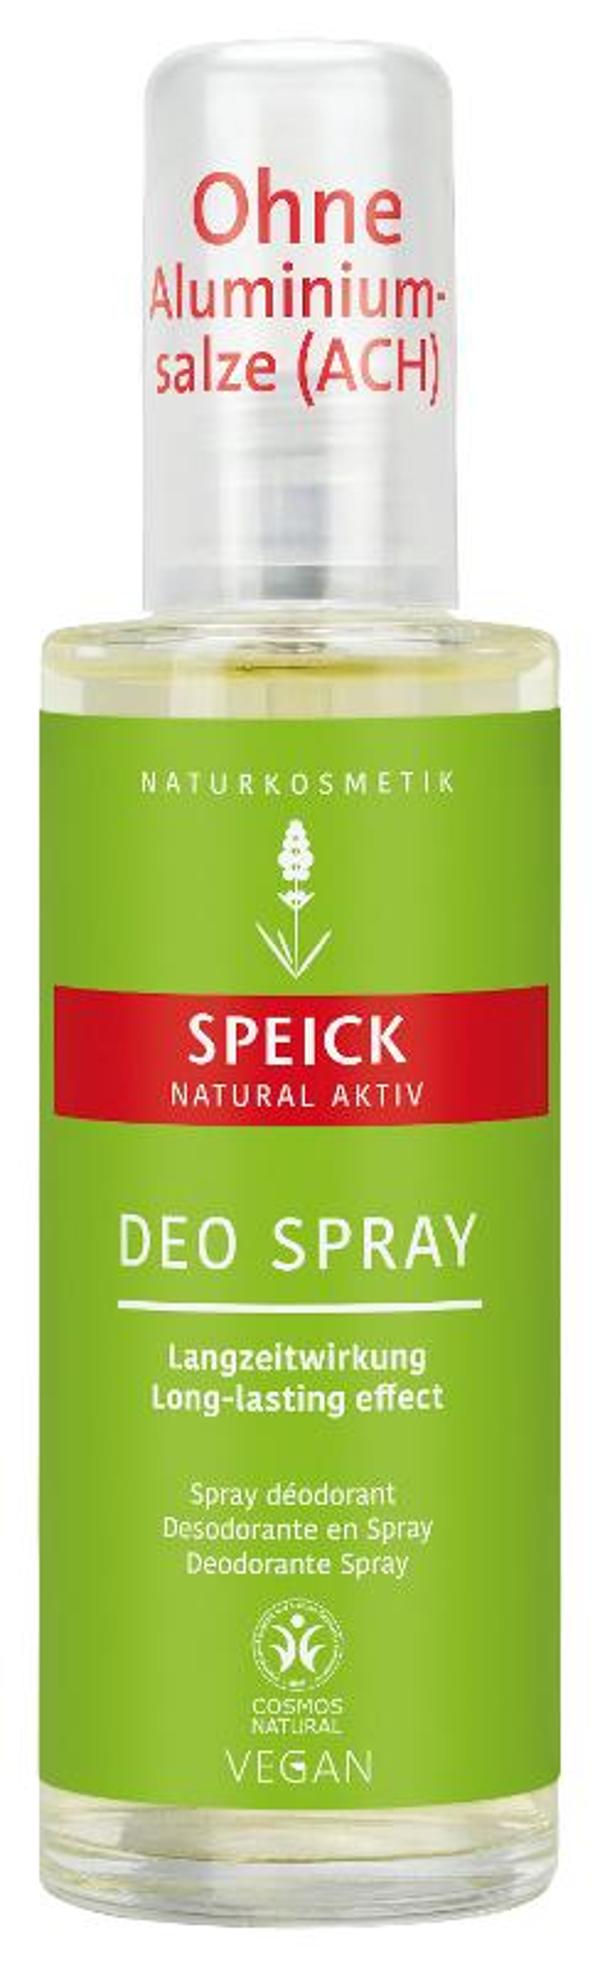 Produktfoto zu Natural Aktiv Deo Spray 75 ml